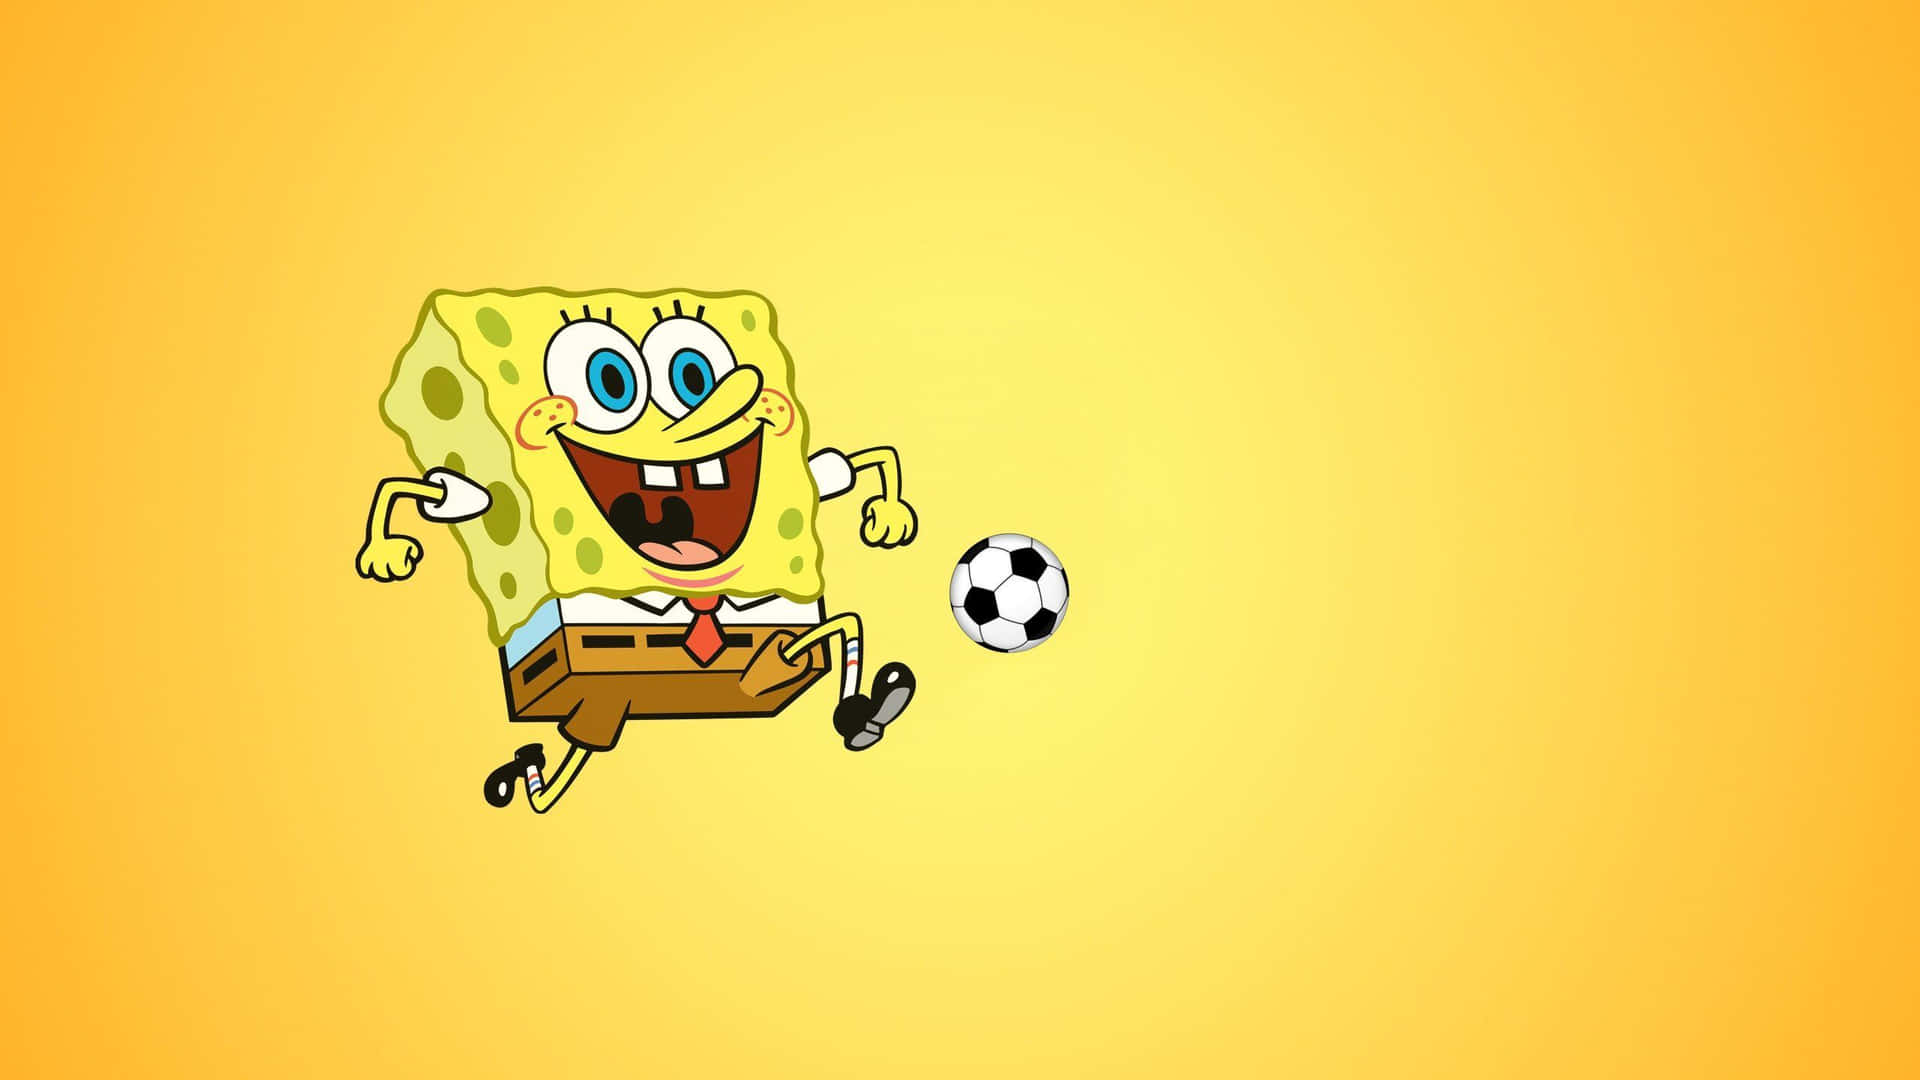 Papel De Parede Com Estética De Bola De Futebol E Spongebob Para Desktop: Papel de Parede